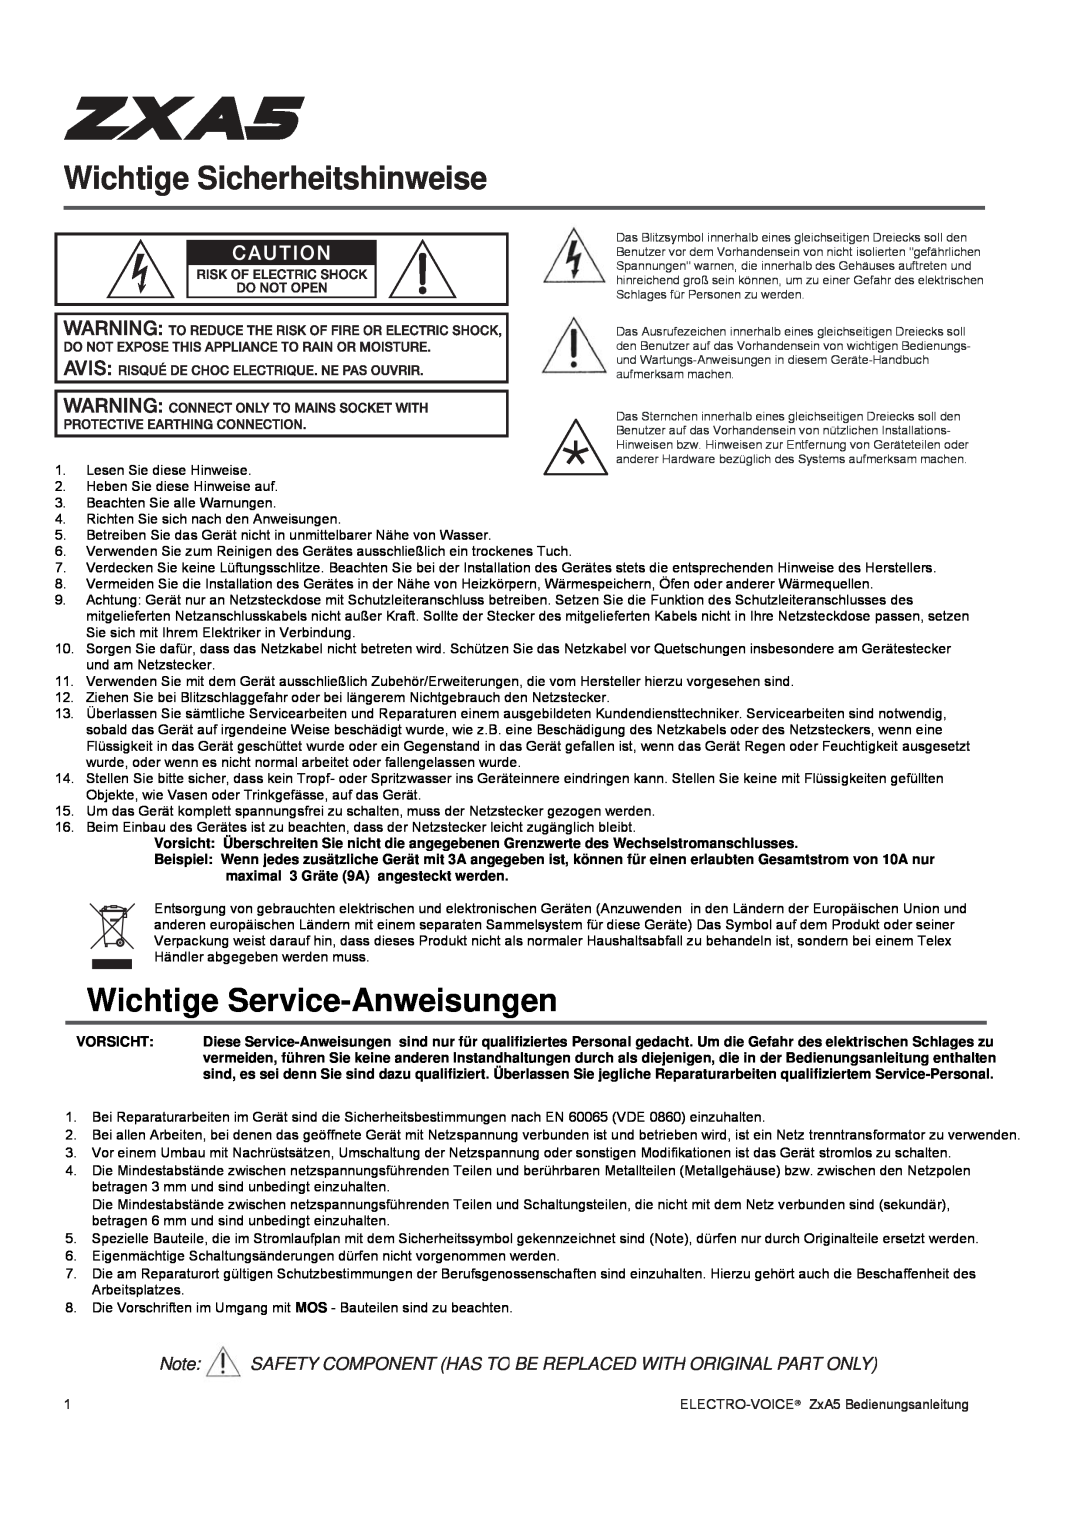 Pentax ZXA5-60, ZXA5-90 owner manual Wichtige Sicherheitshinweise, Wichtige Service-Anweisungen 